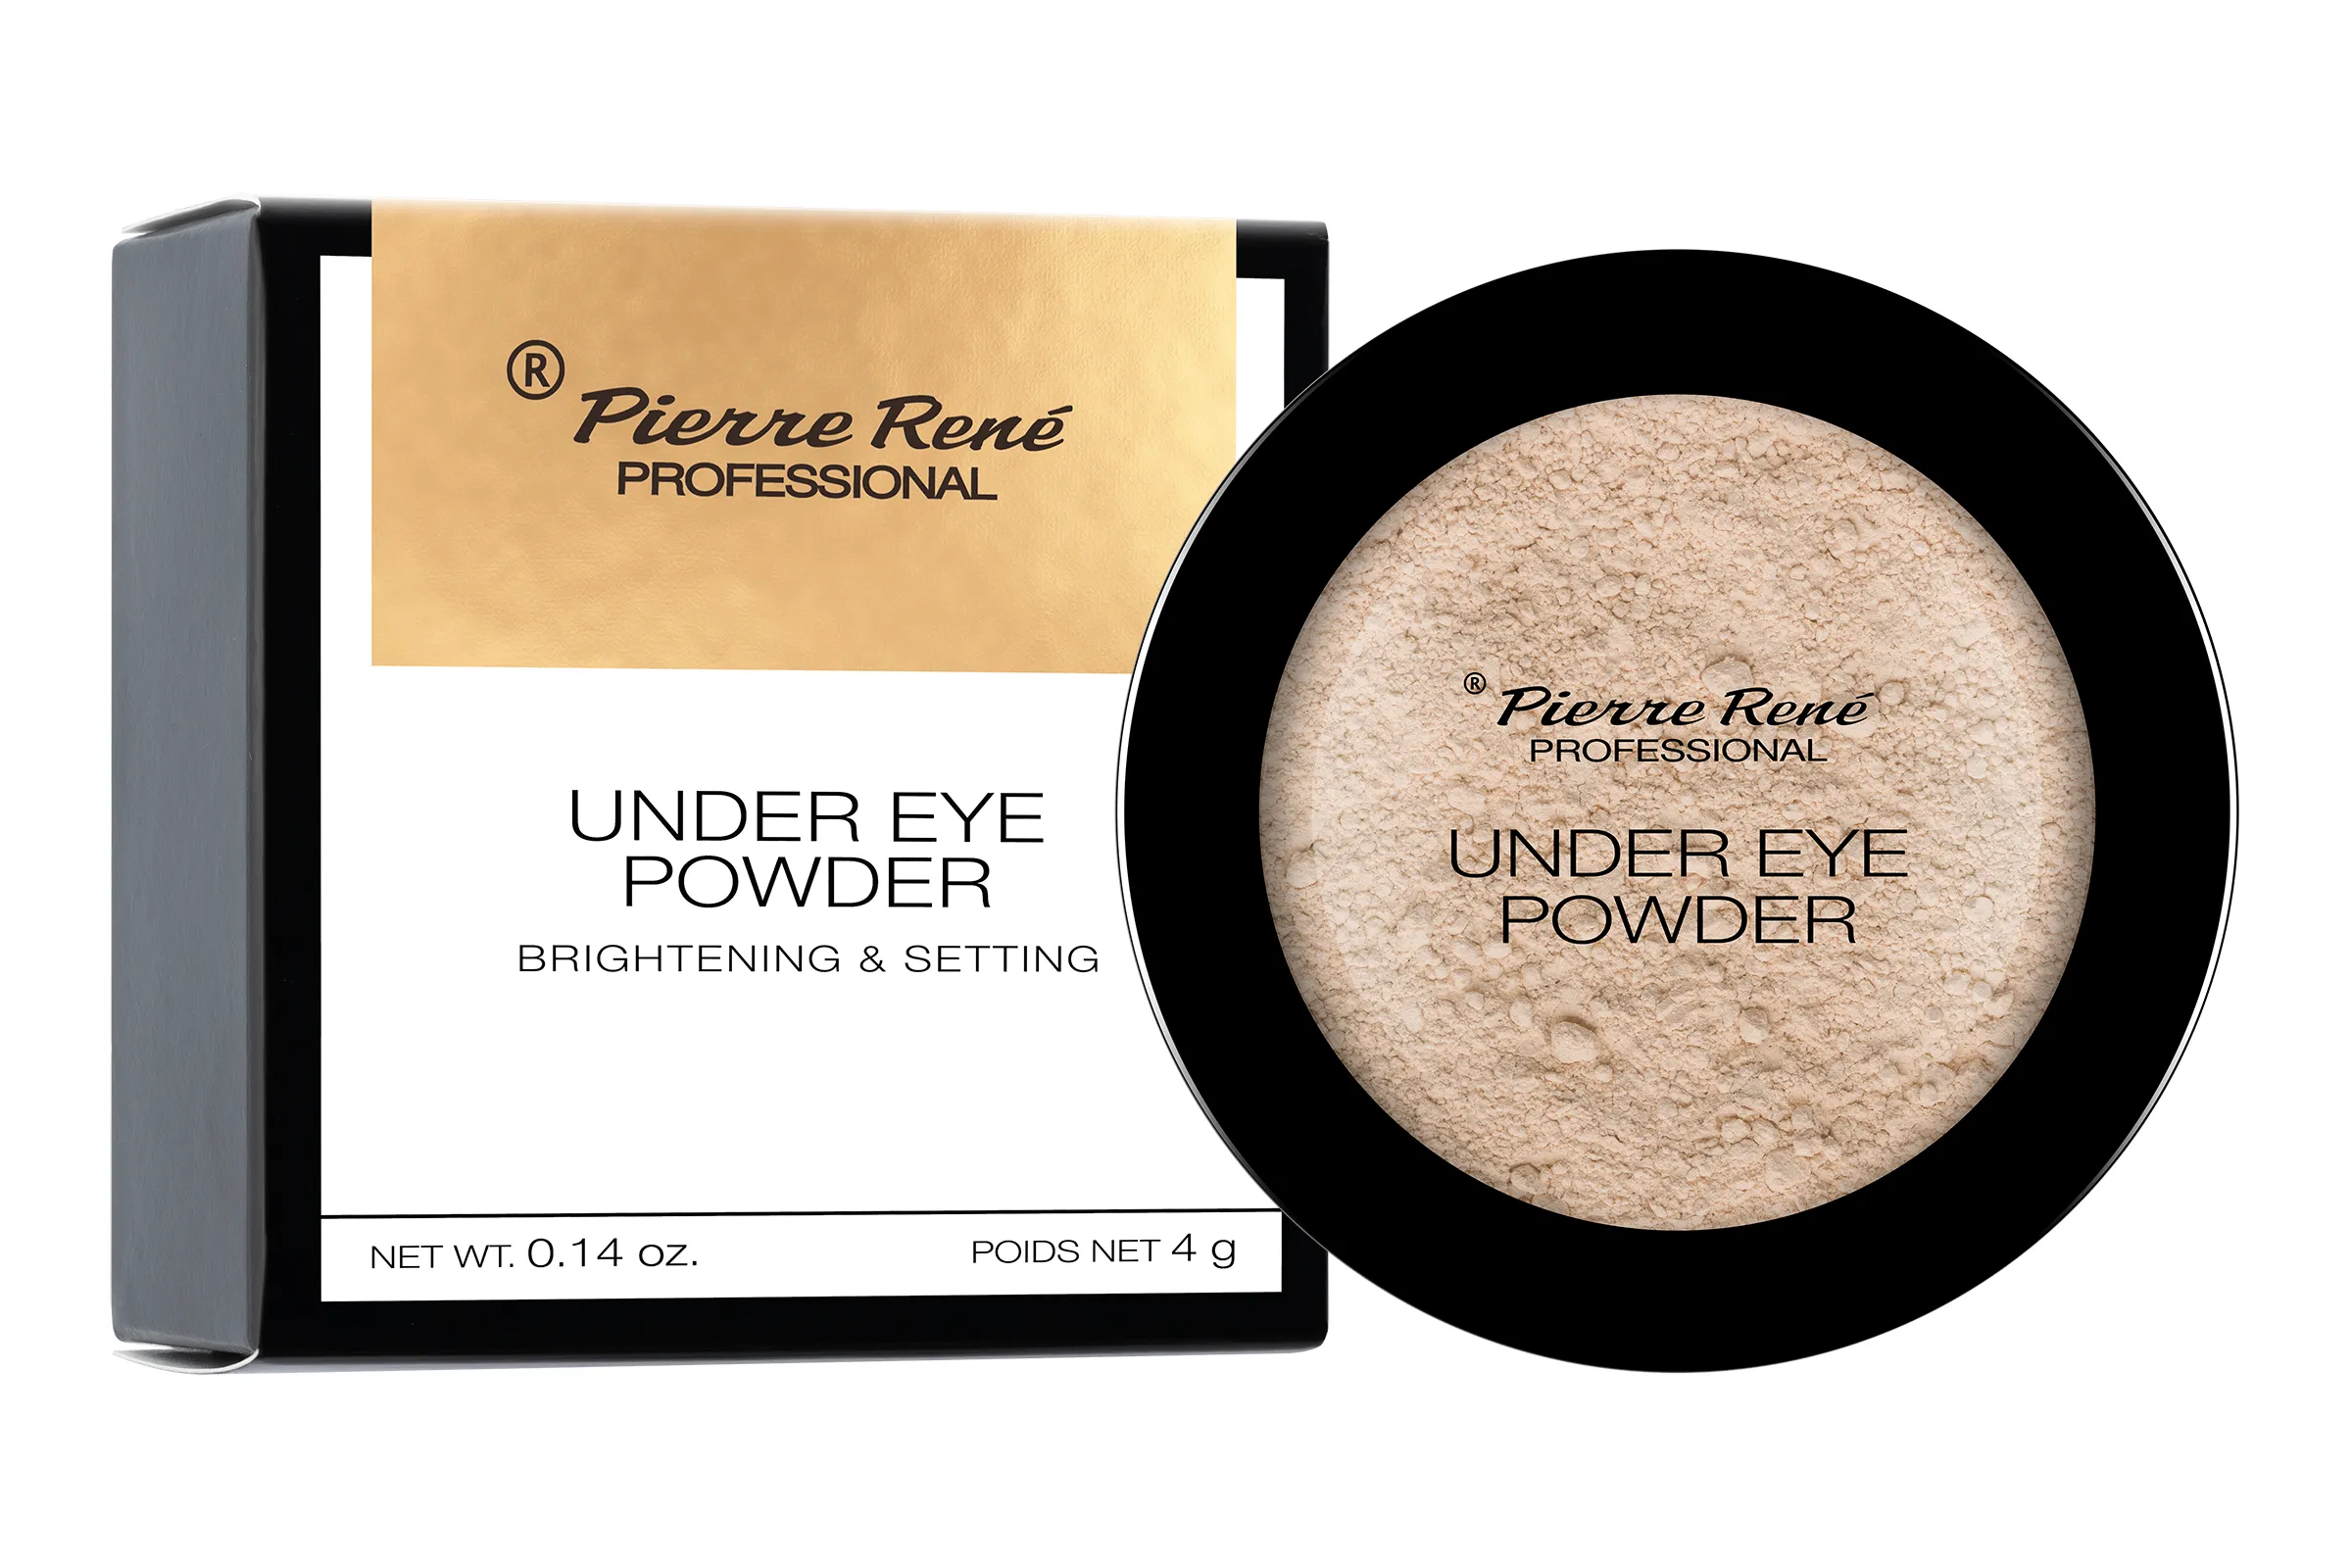 Pierre Rene Professional Under Eye Powder rozświetlająco-wygładzający puder pod oczy, 4 g